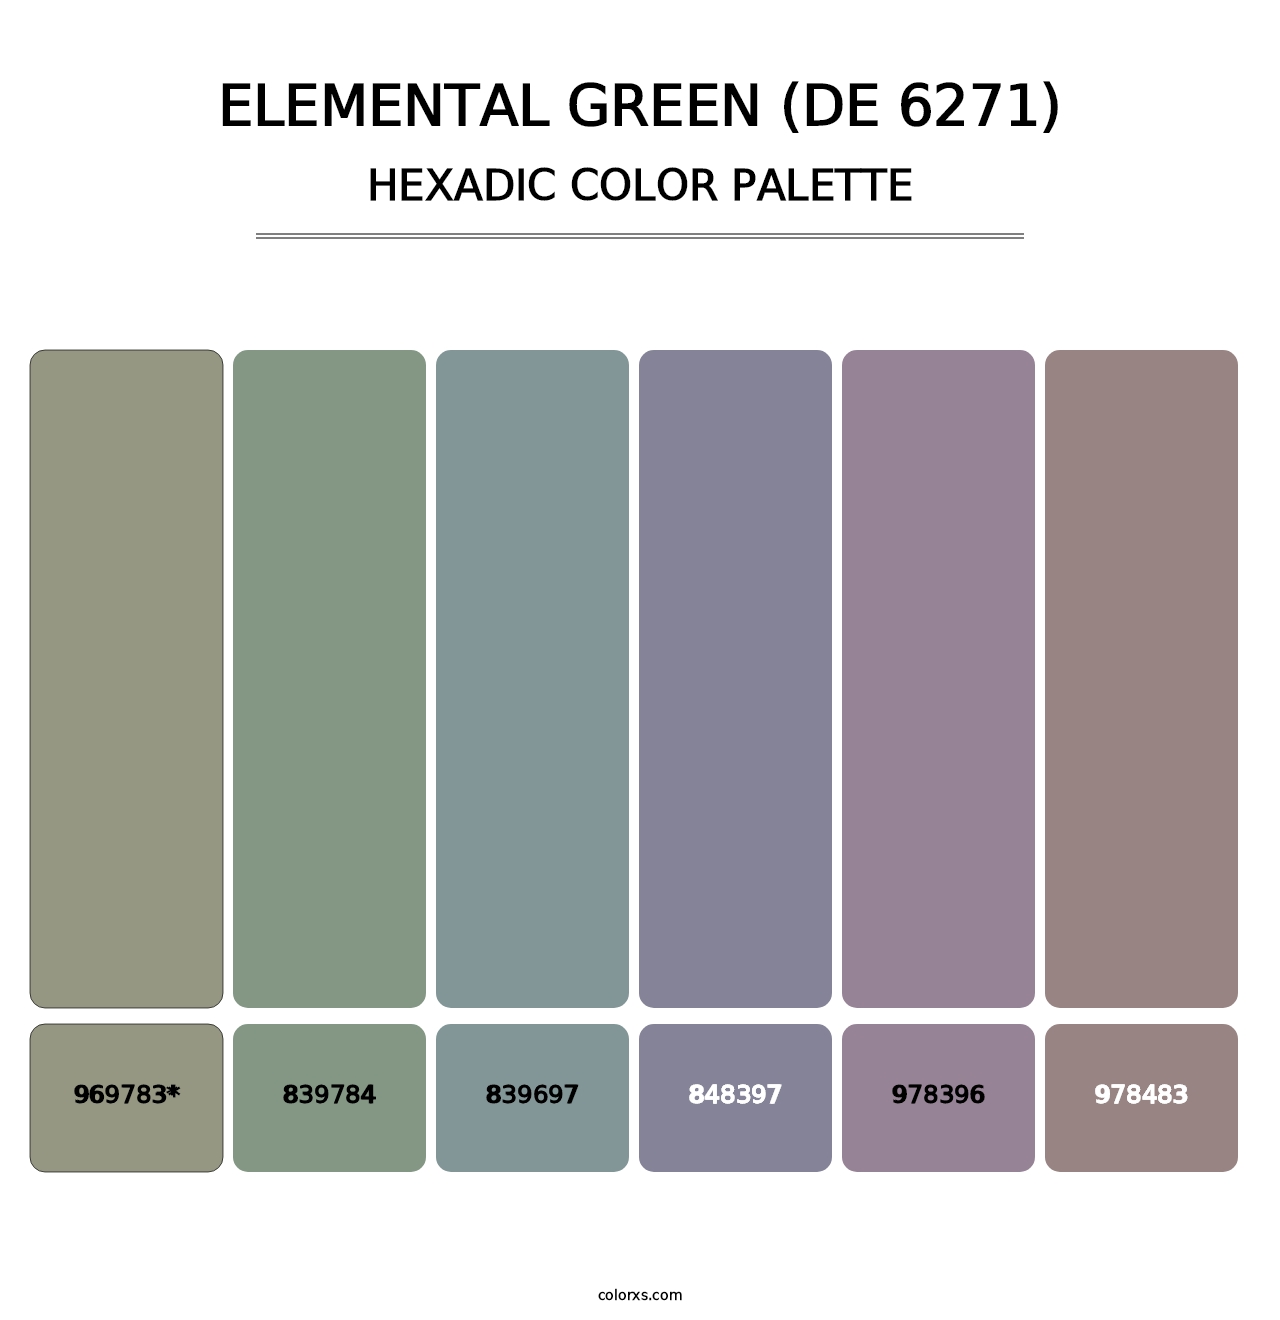 Elemental Green (DE 6271) - Hexadic Color Palette